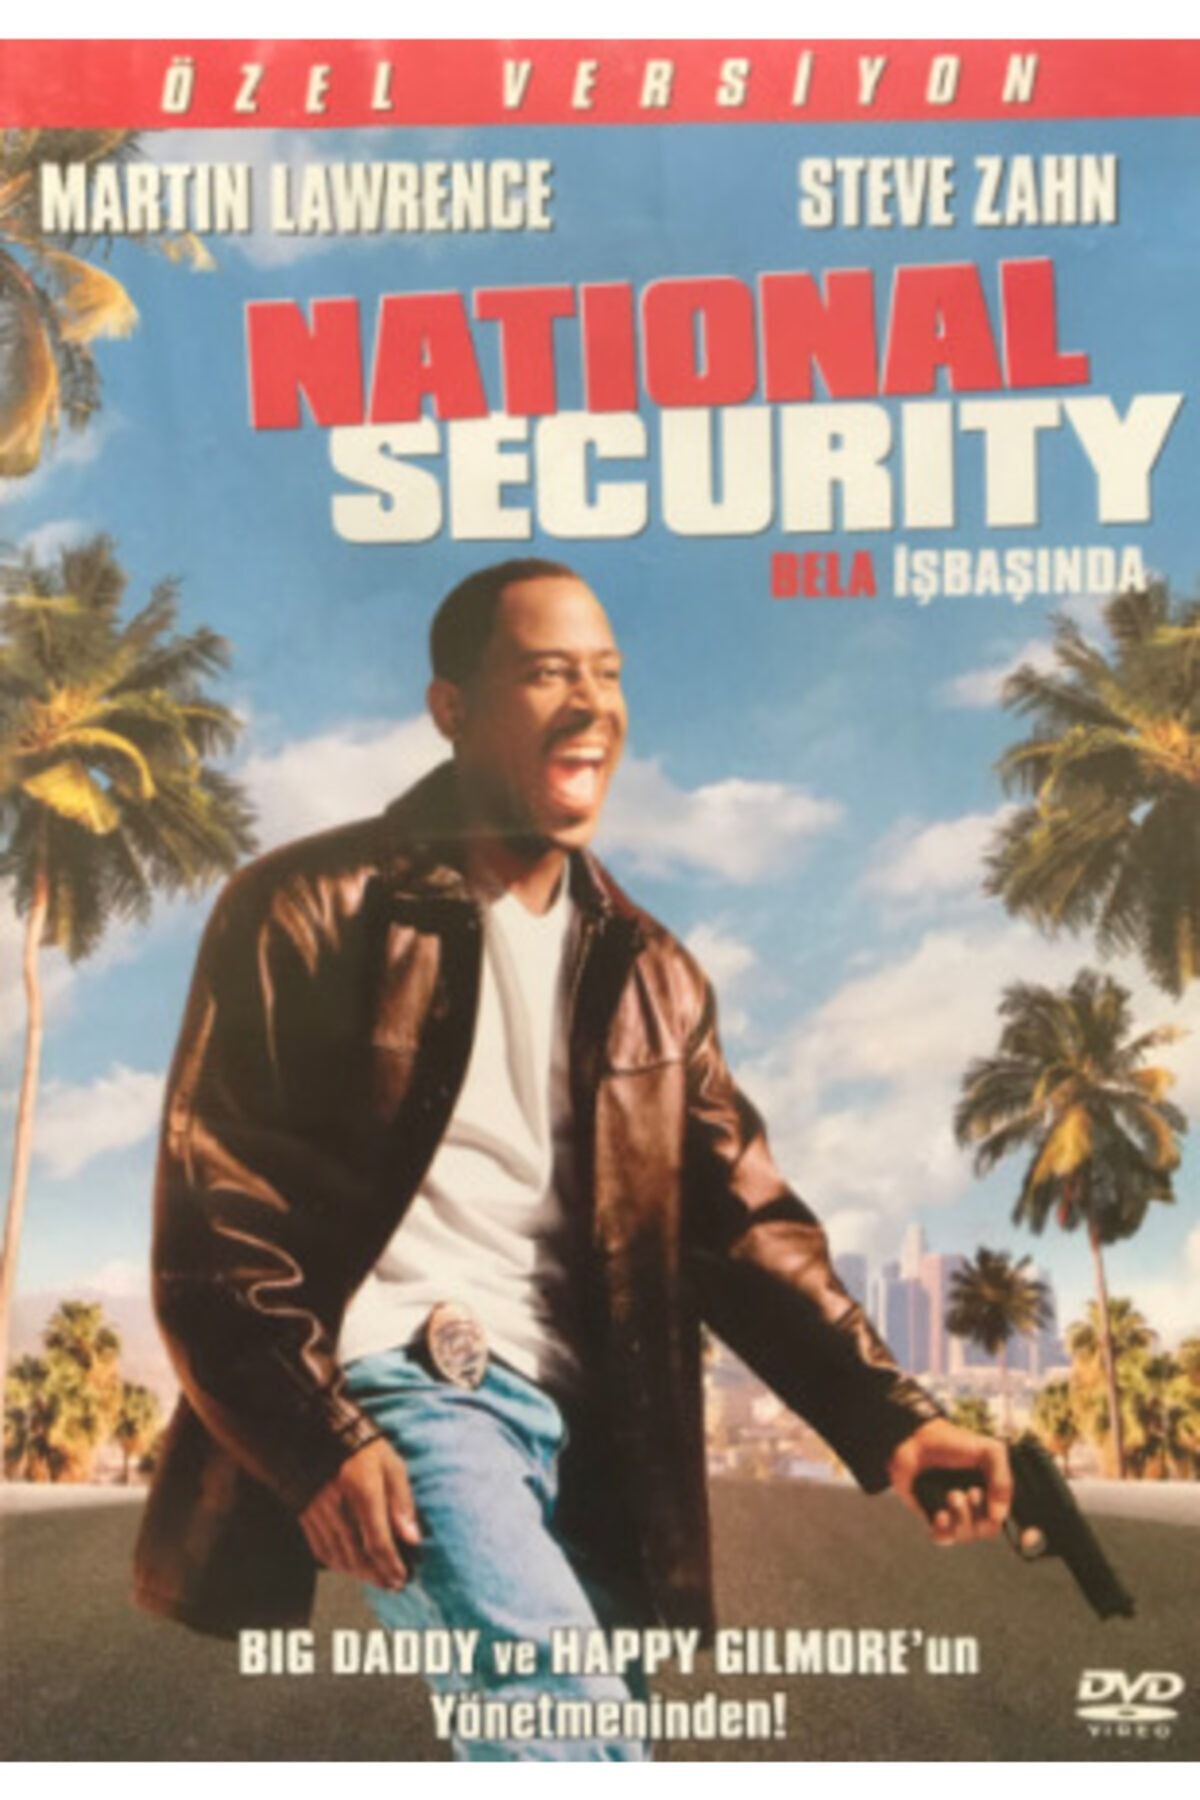 Sony Music National Security (bela Iş Başında) Dvd